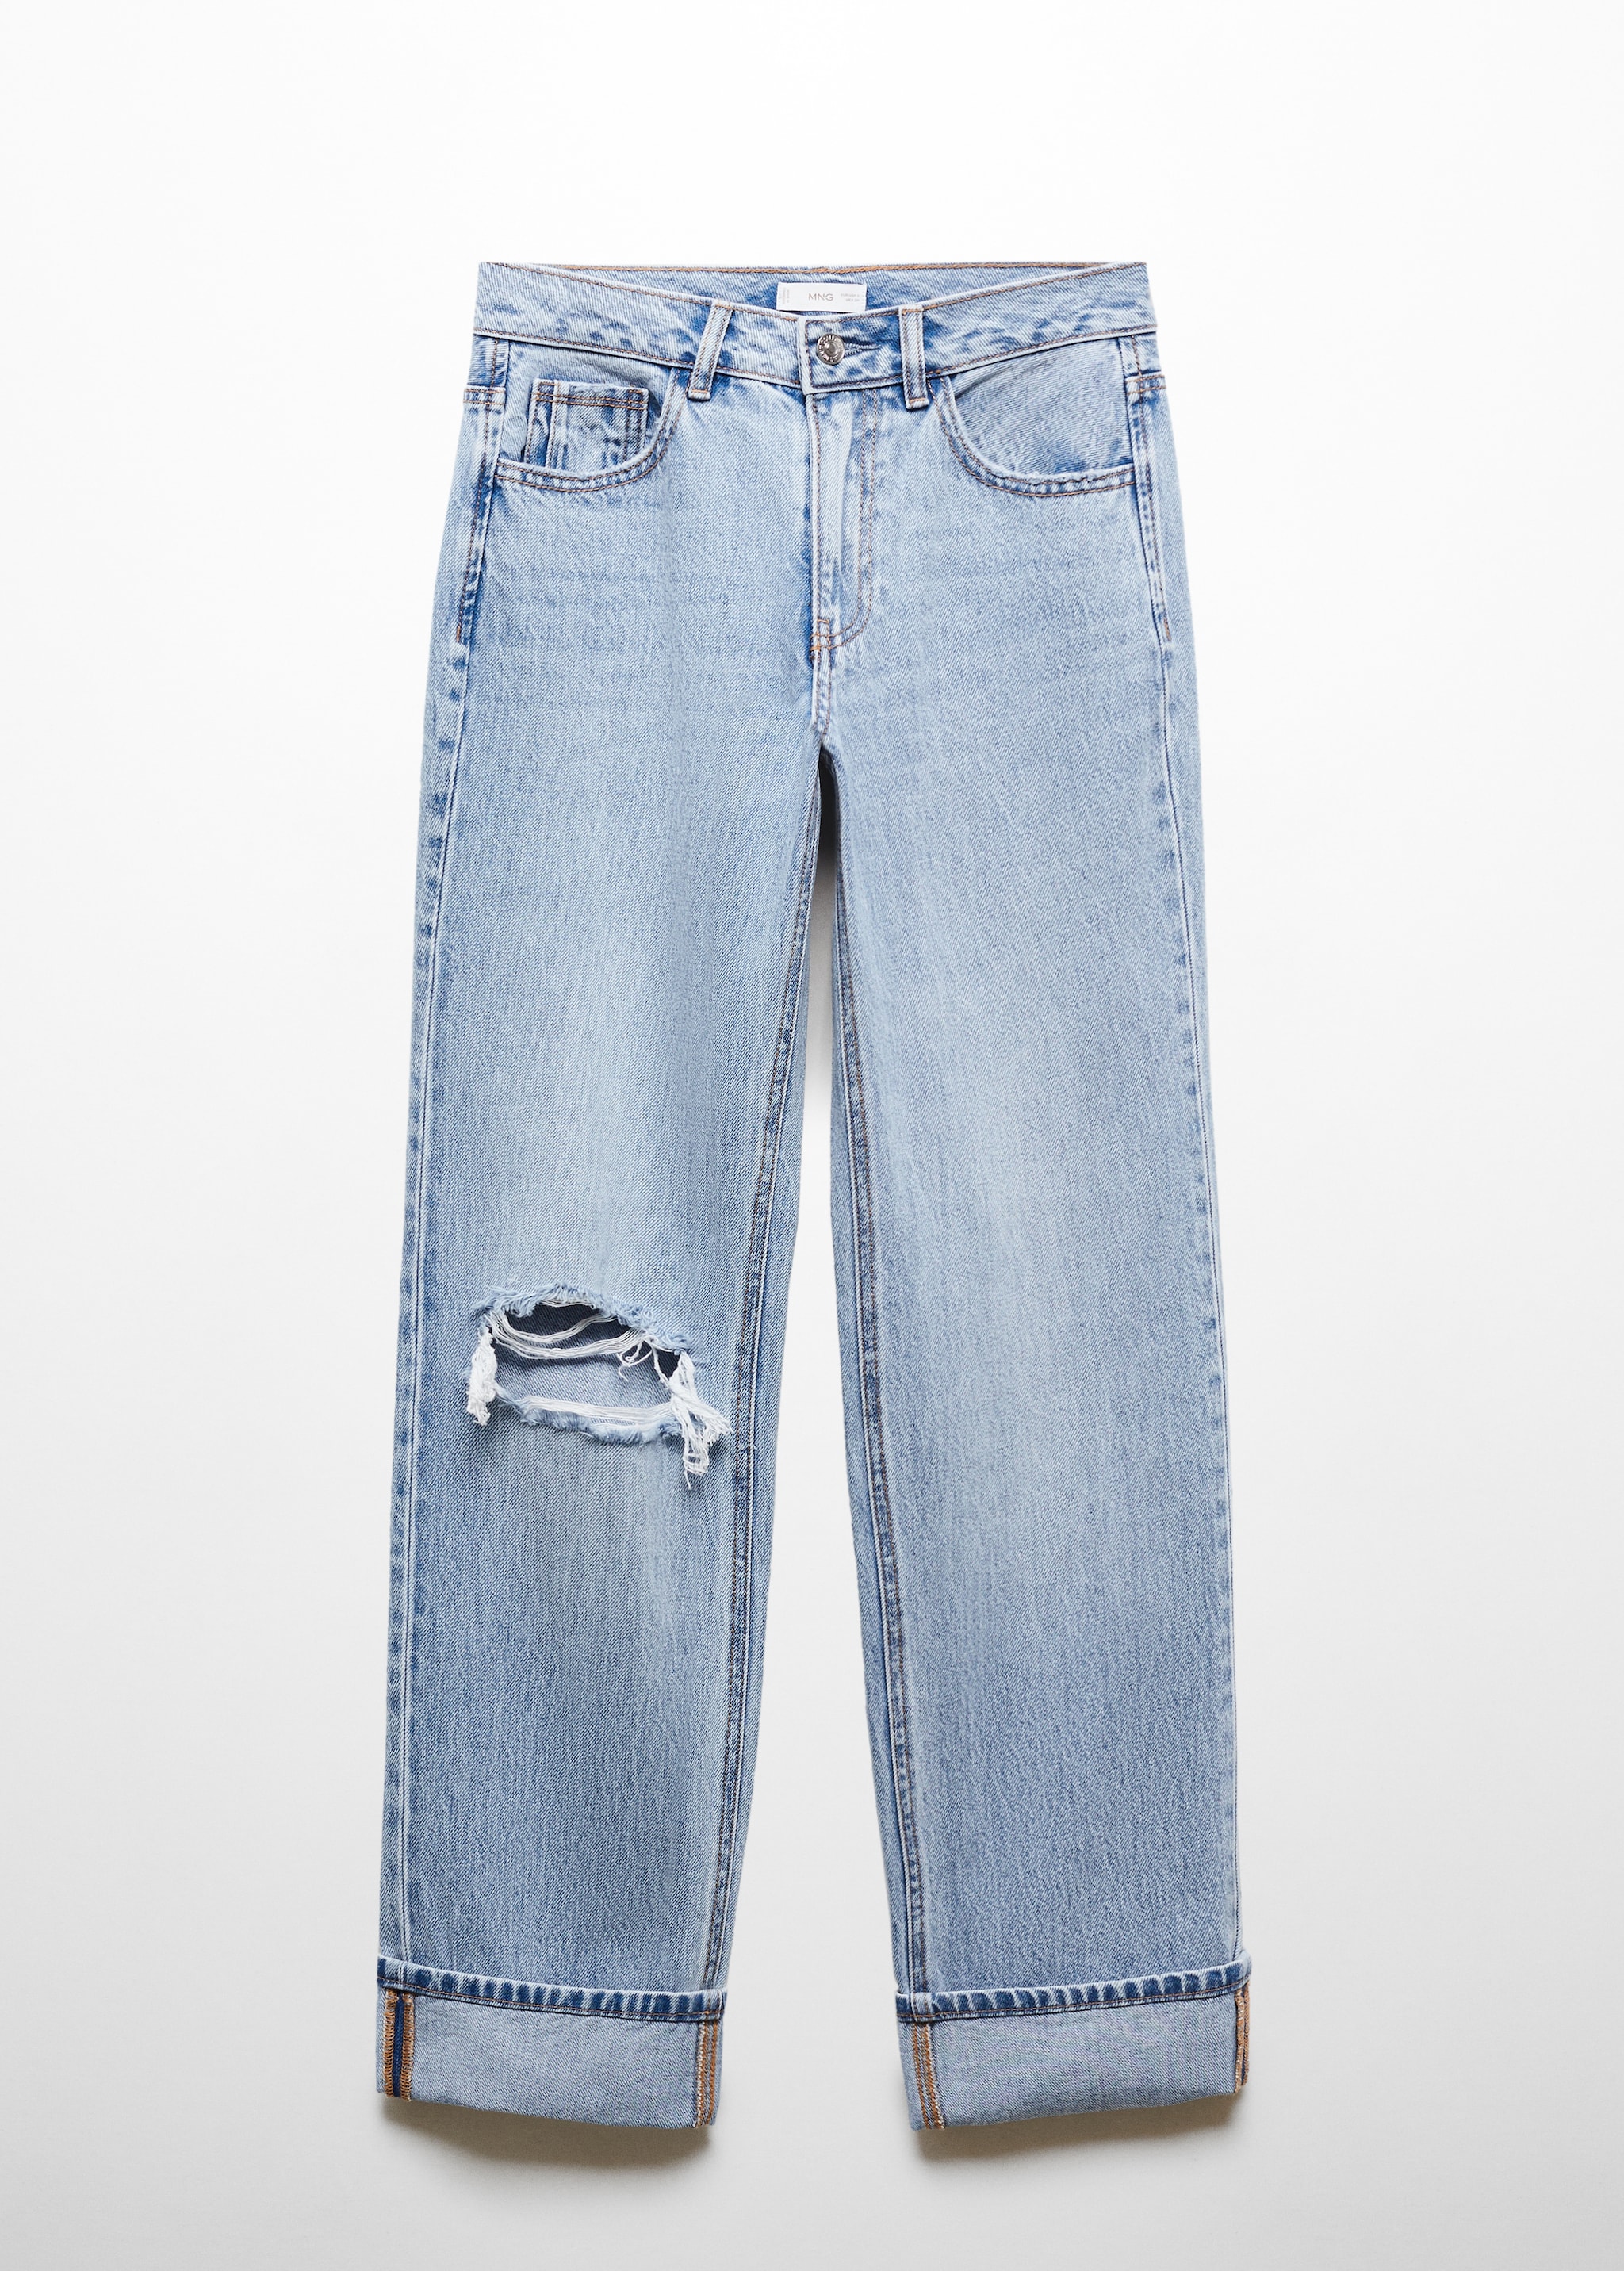 Jeans rotos bajo vuelta - Artículo sin modelo